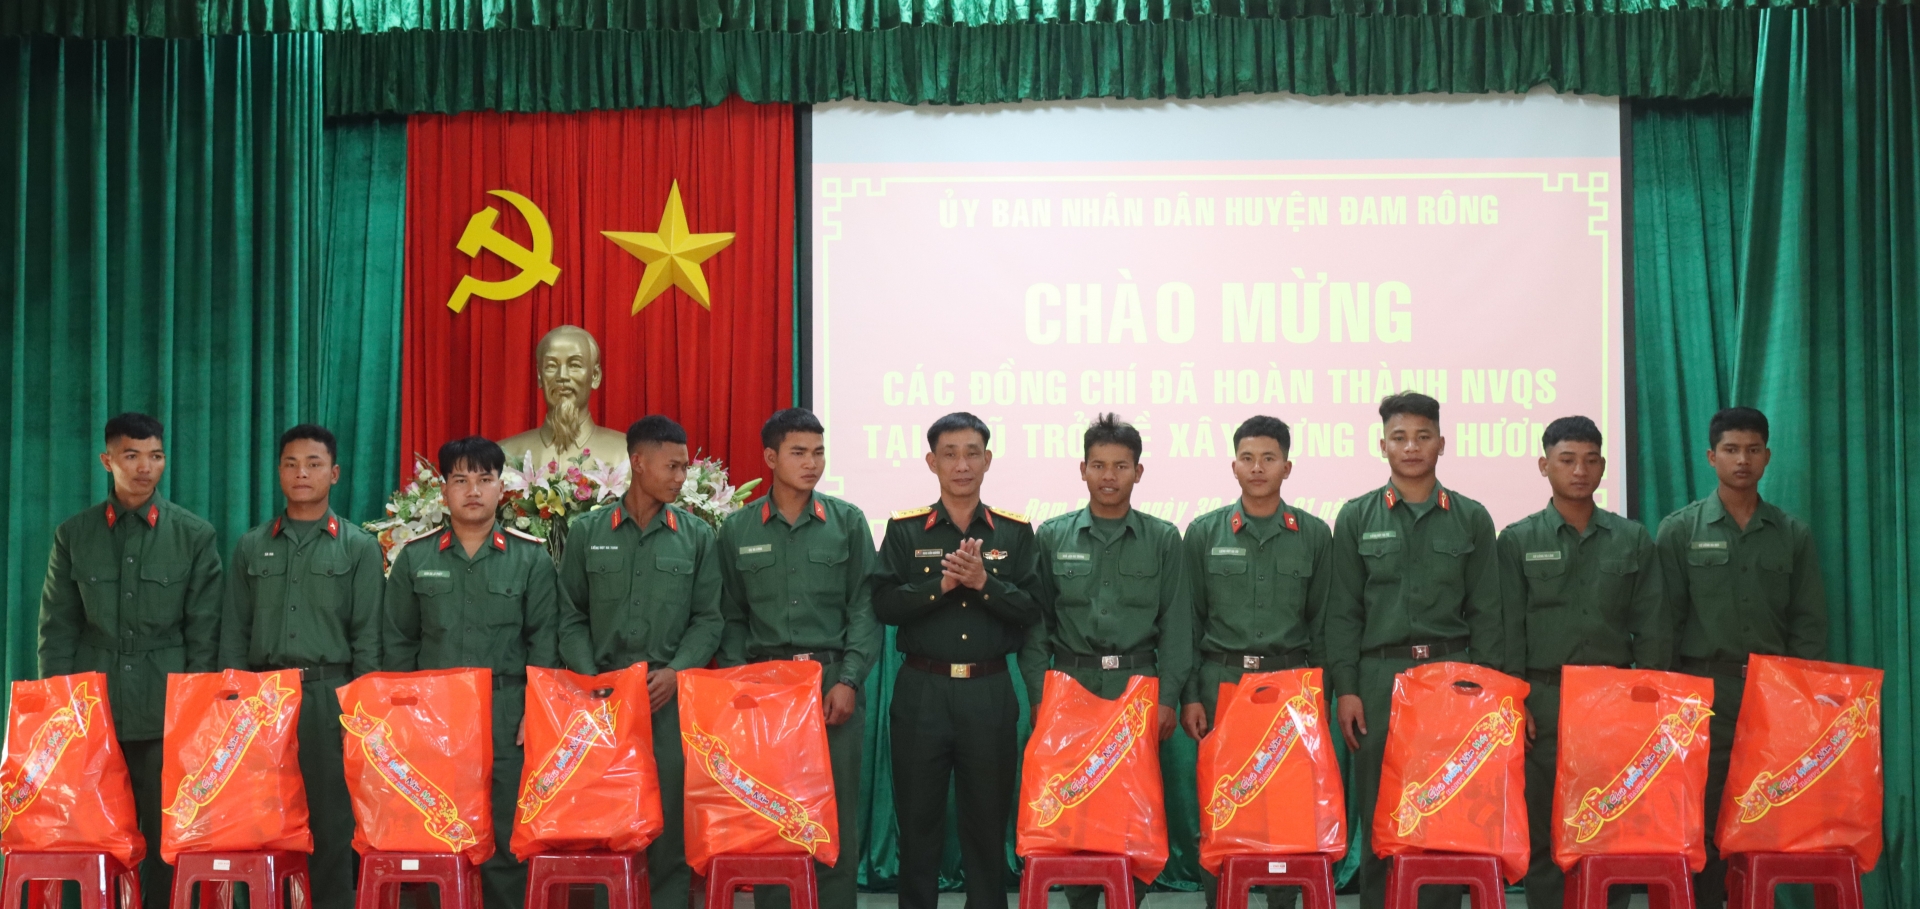 Thượng tá Đoàn Xuân Nguyên – Chỉ Huy trưởng Ban Chỉ huy Quân sự huyện trao tặng quà cho các quân nhân